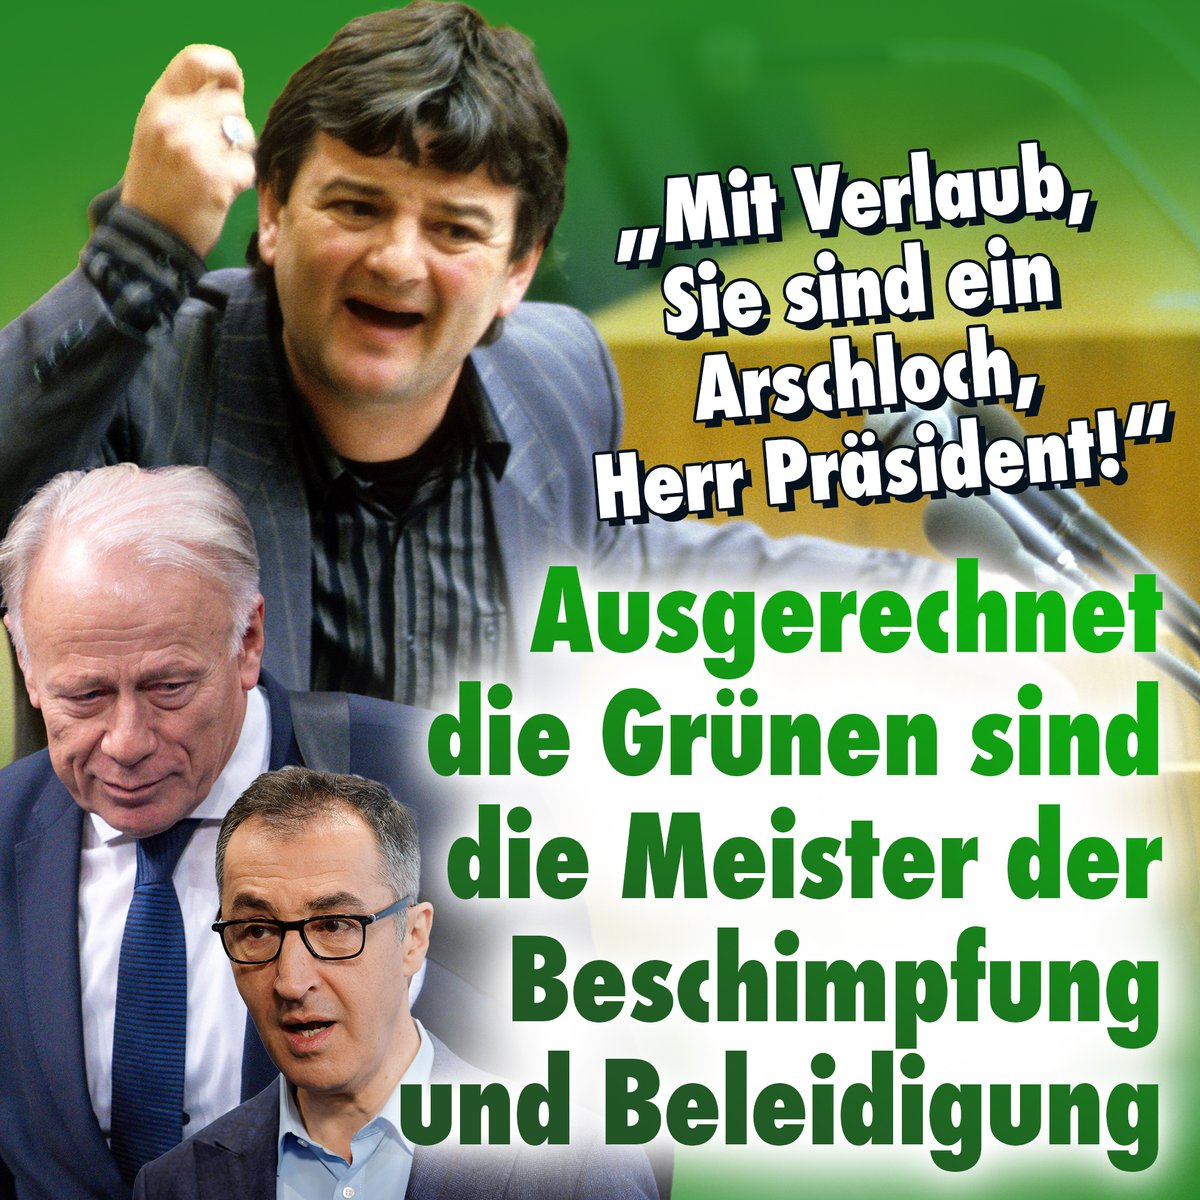 Grüne Spitzenpolitiker gehen gegen Bürger vor, wenn sie sich von ihnen beleidigt fühlen. NIUS dokumentiert aus diesem Anlass mal ein paar #Beleidigungen und Entgleisungen aus den Reihen der Grünen:
nius.de/video/mit-verl…